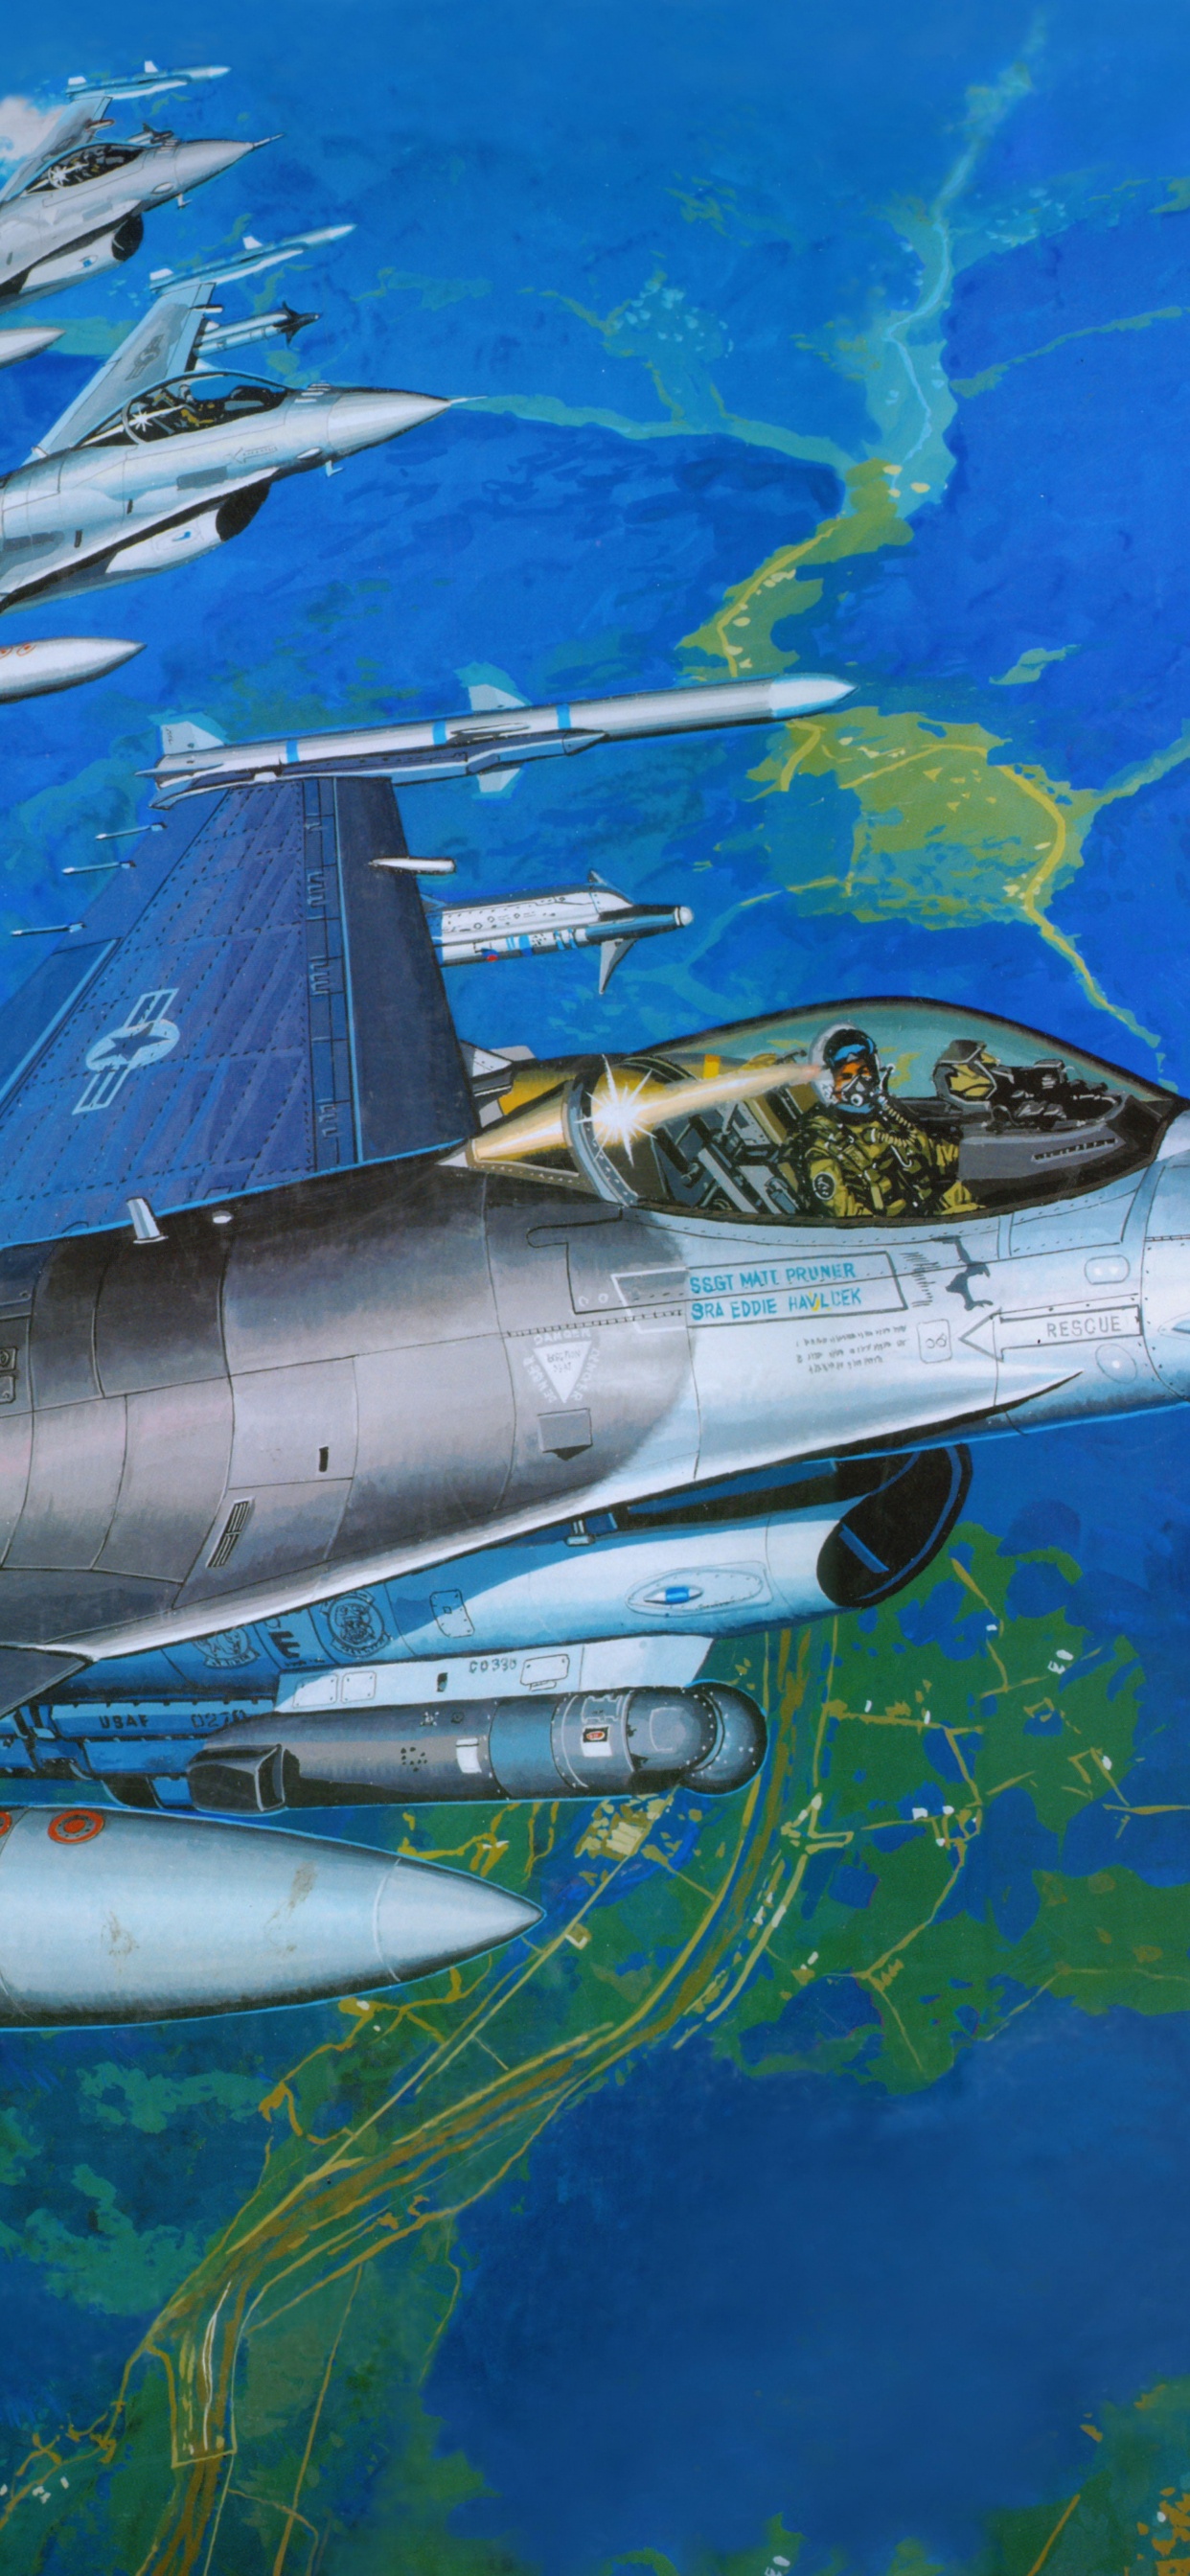 塑料模型, 航空, 空军, 军用飞机, 喷气式飞机 壁纸 1242x2688 允许